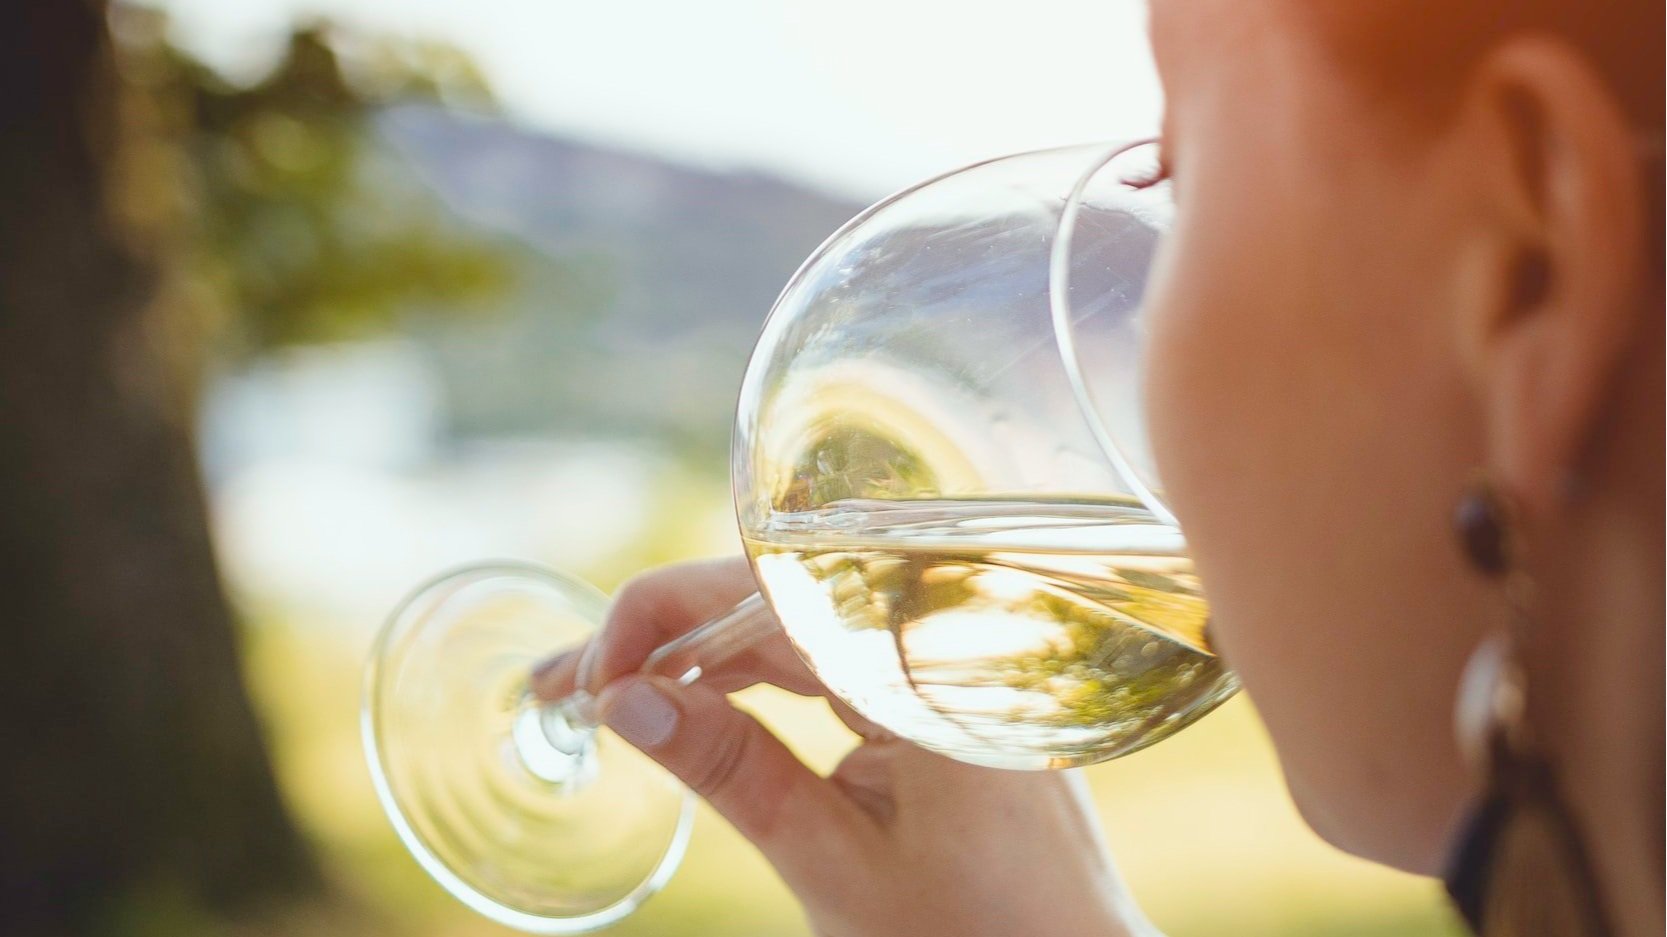 ways to save money buying wine - white wine glass